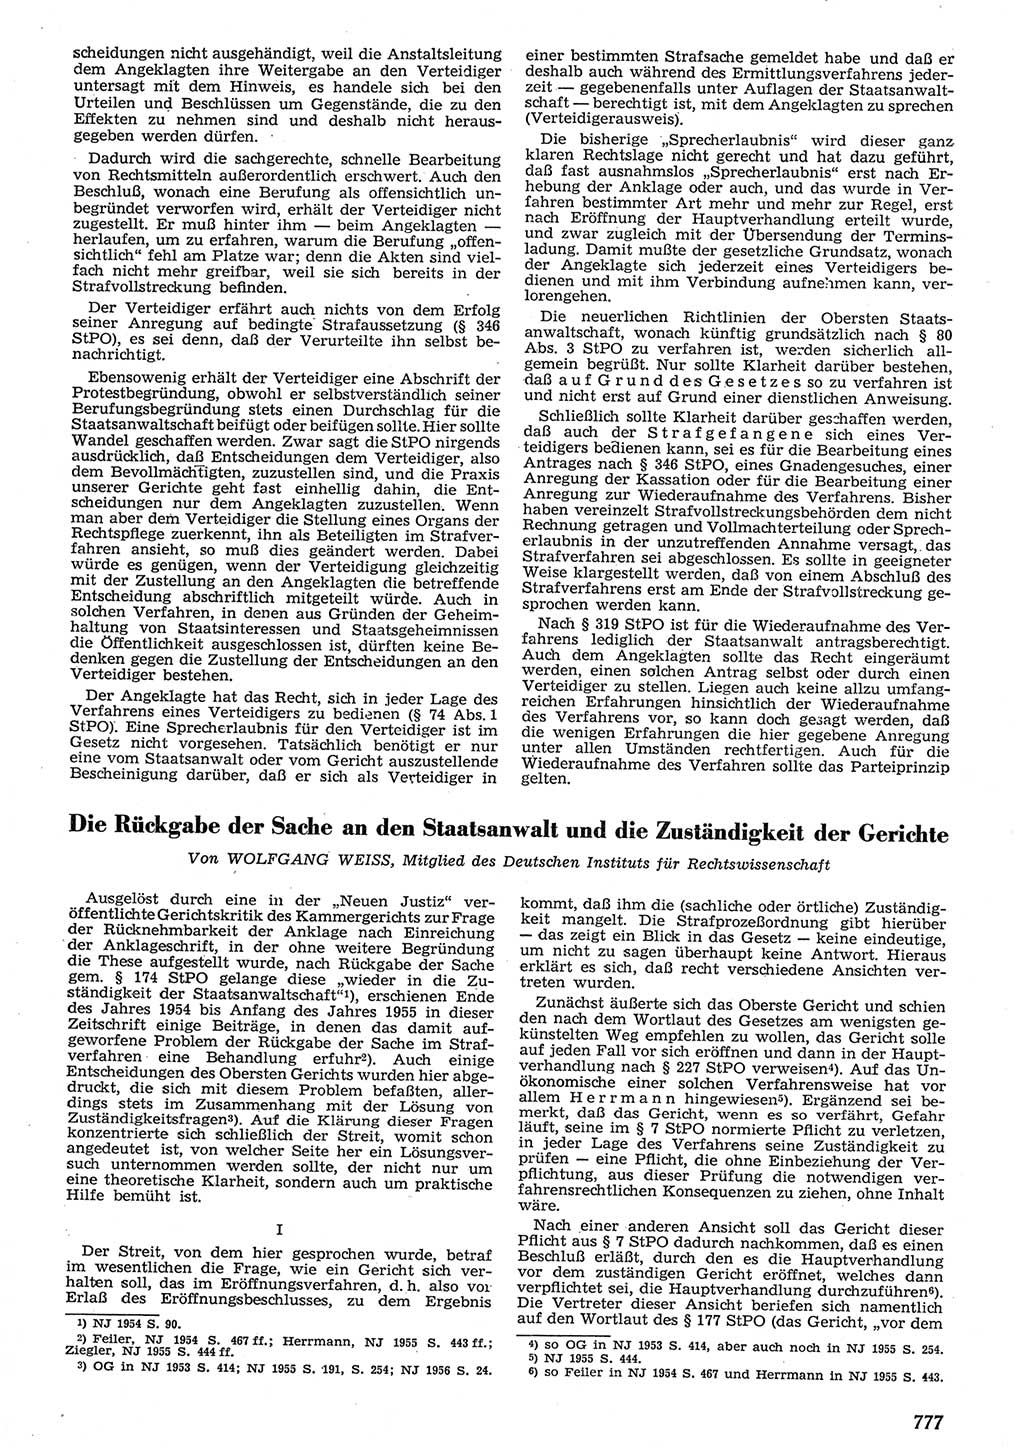 Neue Justiz (NJ), Zeitschrift für Recht und Rechtswissenschaft [Deutsche Demokratische Republik (DDR)], 10. Jahrgang 1956, Seite 777 (NJ DDR 1956, S. 777)